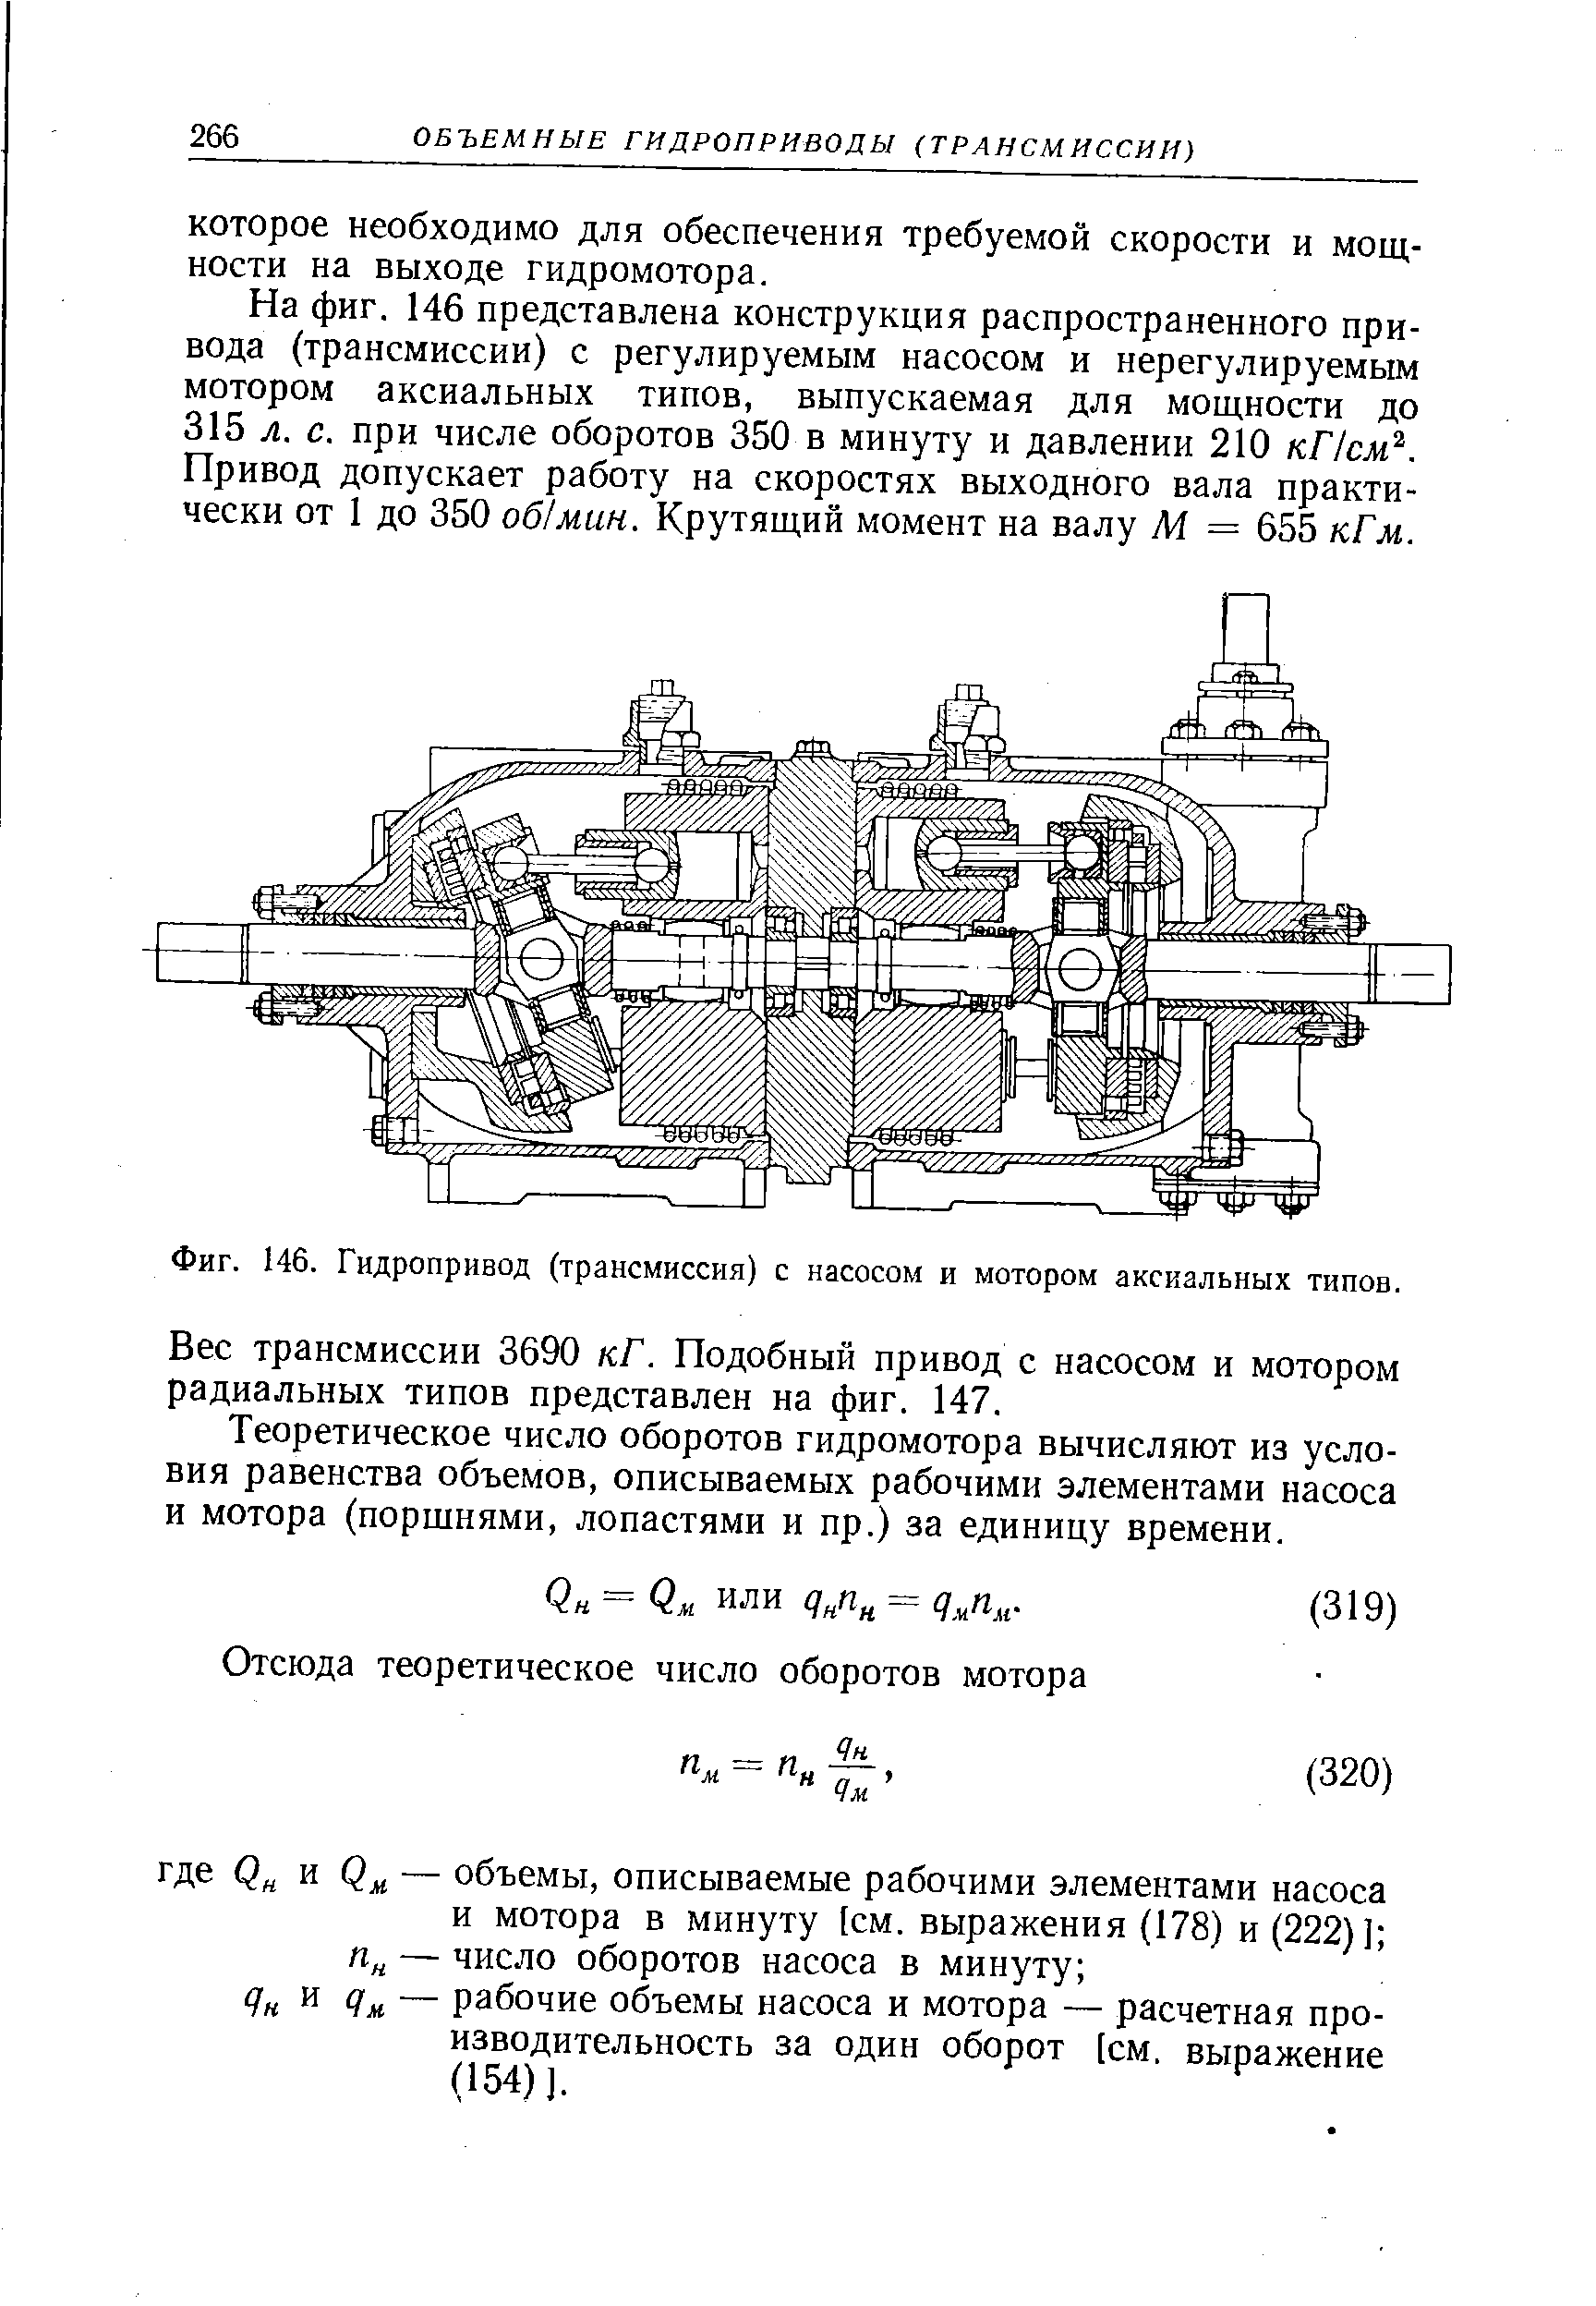 Фиг. 146. Гидропривод (трансмиссия) с насосом и мотором аксиальных типов.
